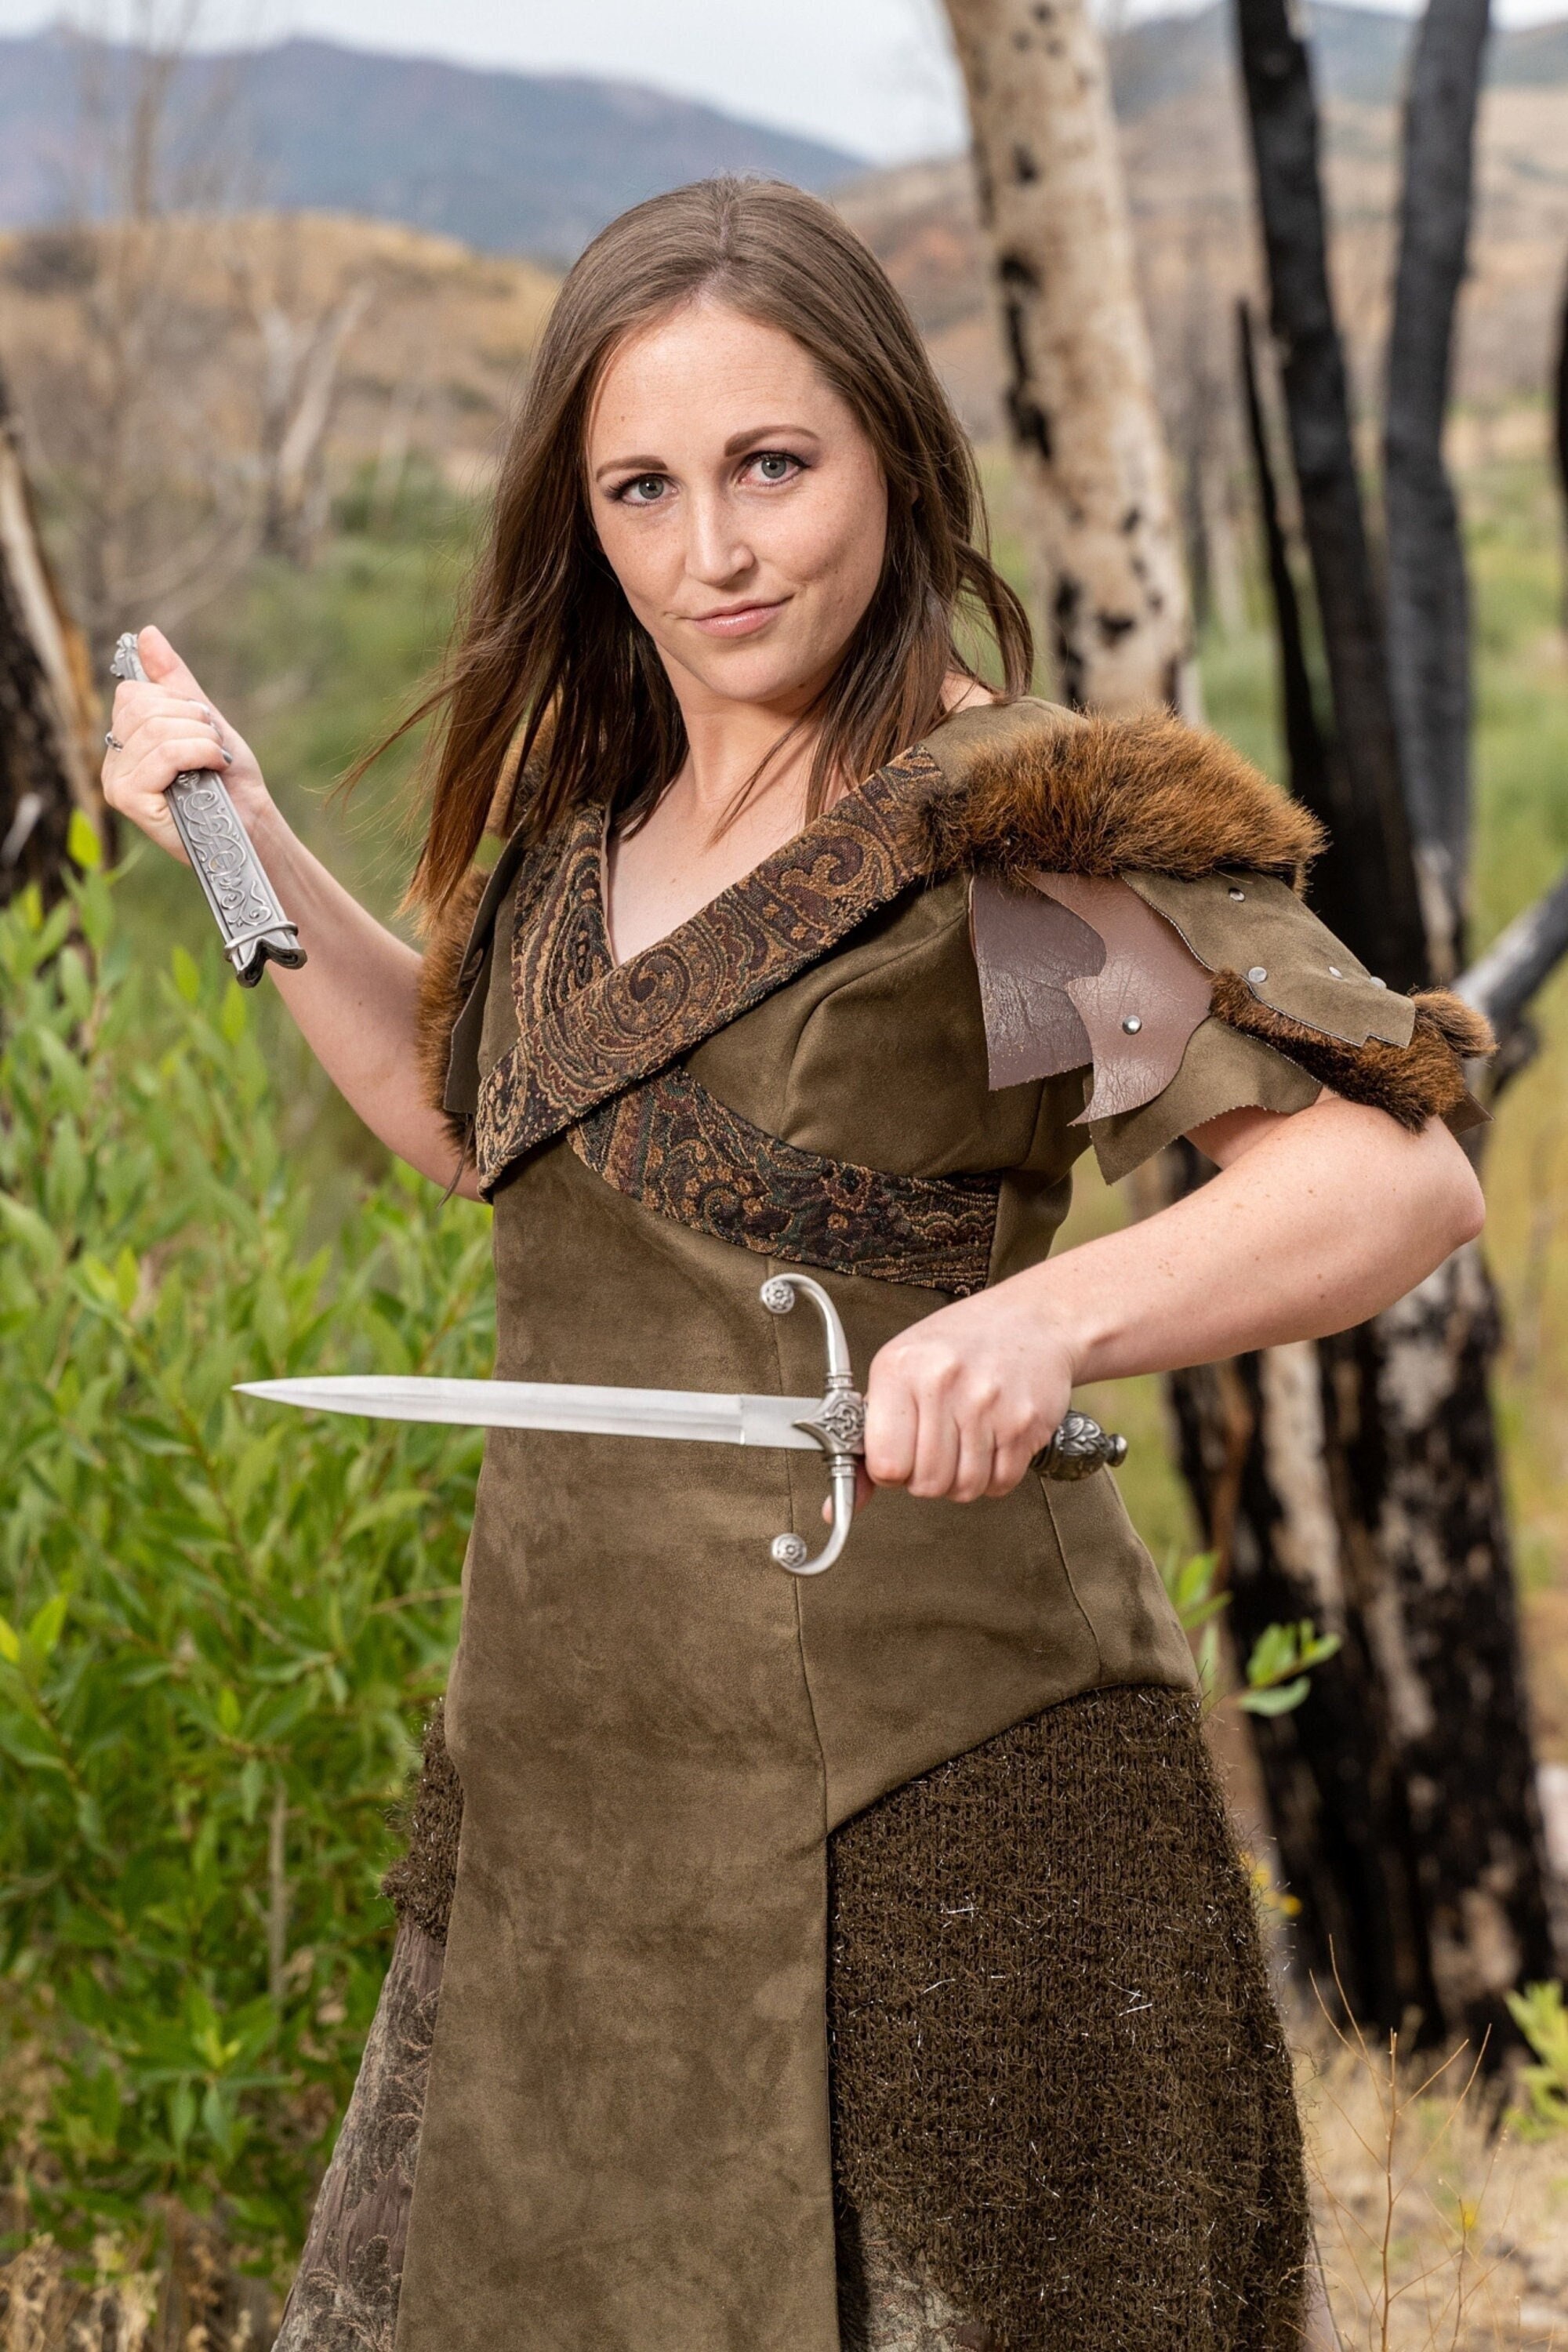 Viking Costume Womens 